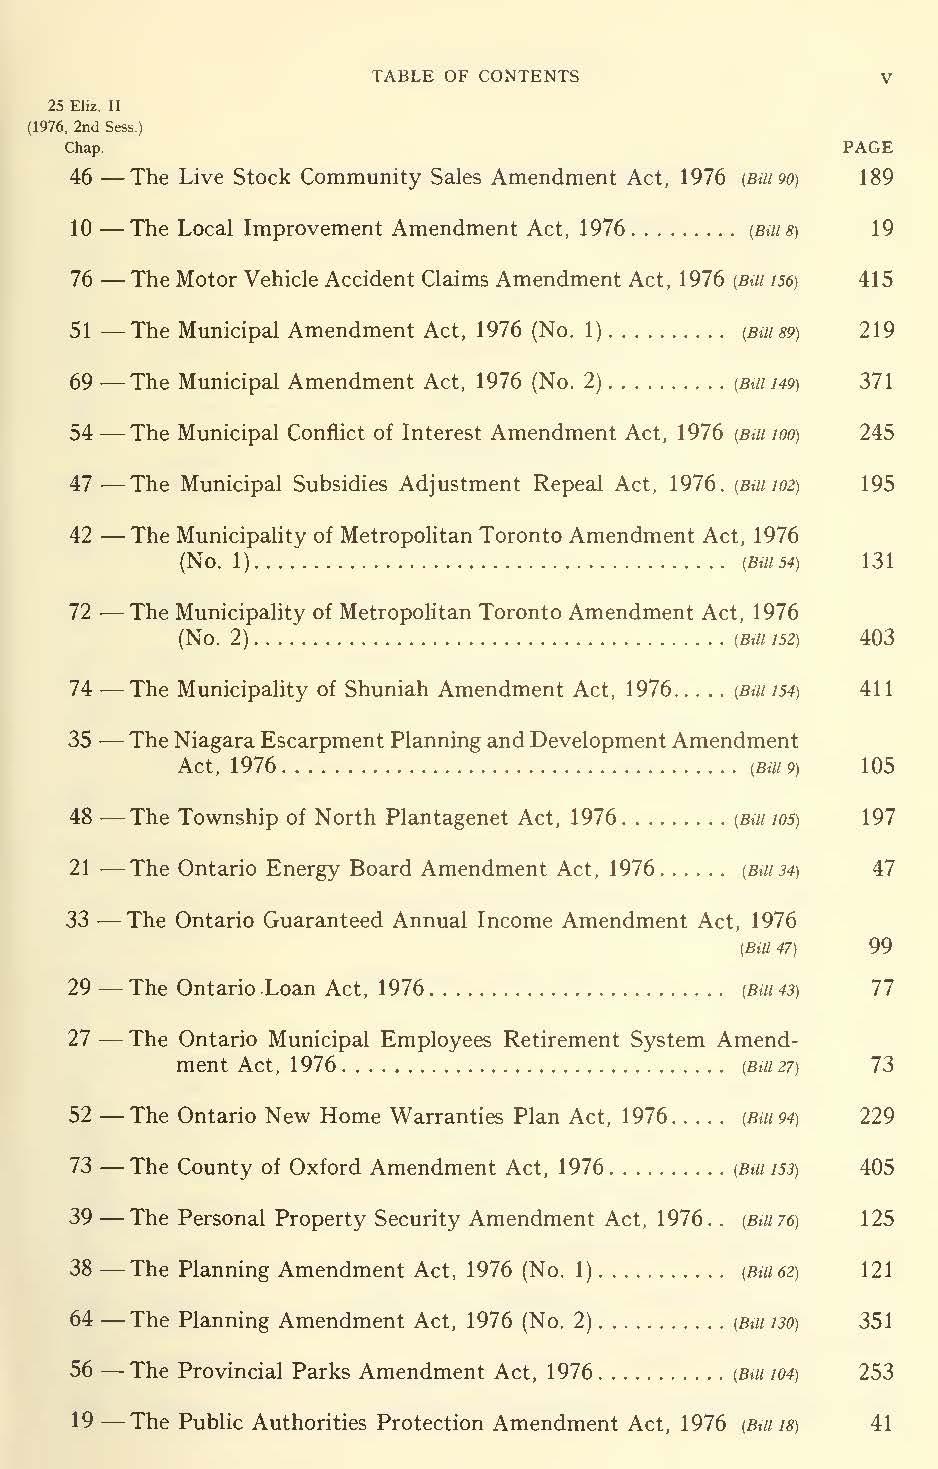 25 Eliz. II (1976, 2n<l Sess.) v 46 -The Live Stock Community Sales Amendment Act, 1976 (Bill 90) 189 10-The Local Improvement Amendment Act, 1976.